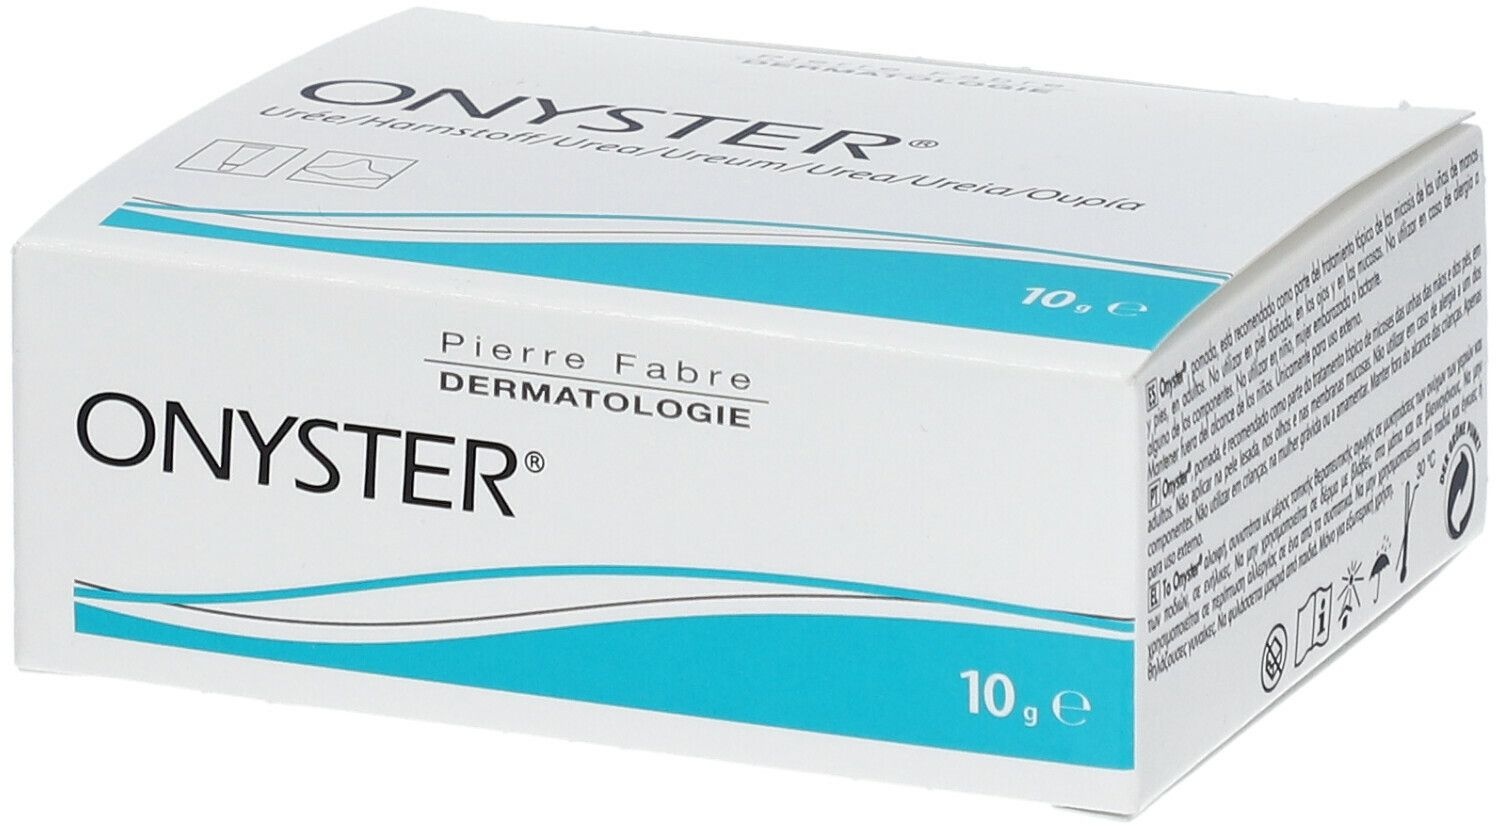 Pierre Fabre Dermatologie Onyster®